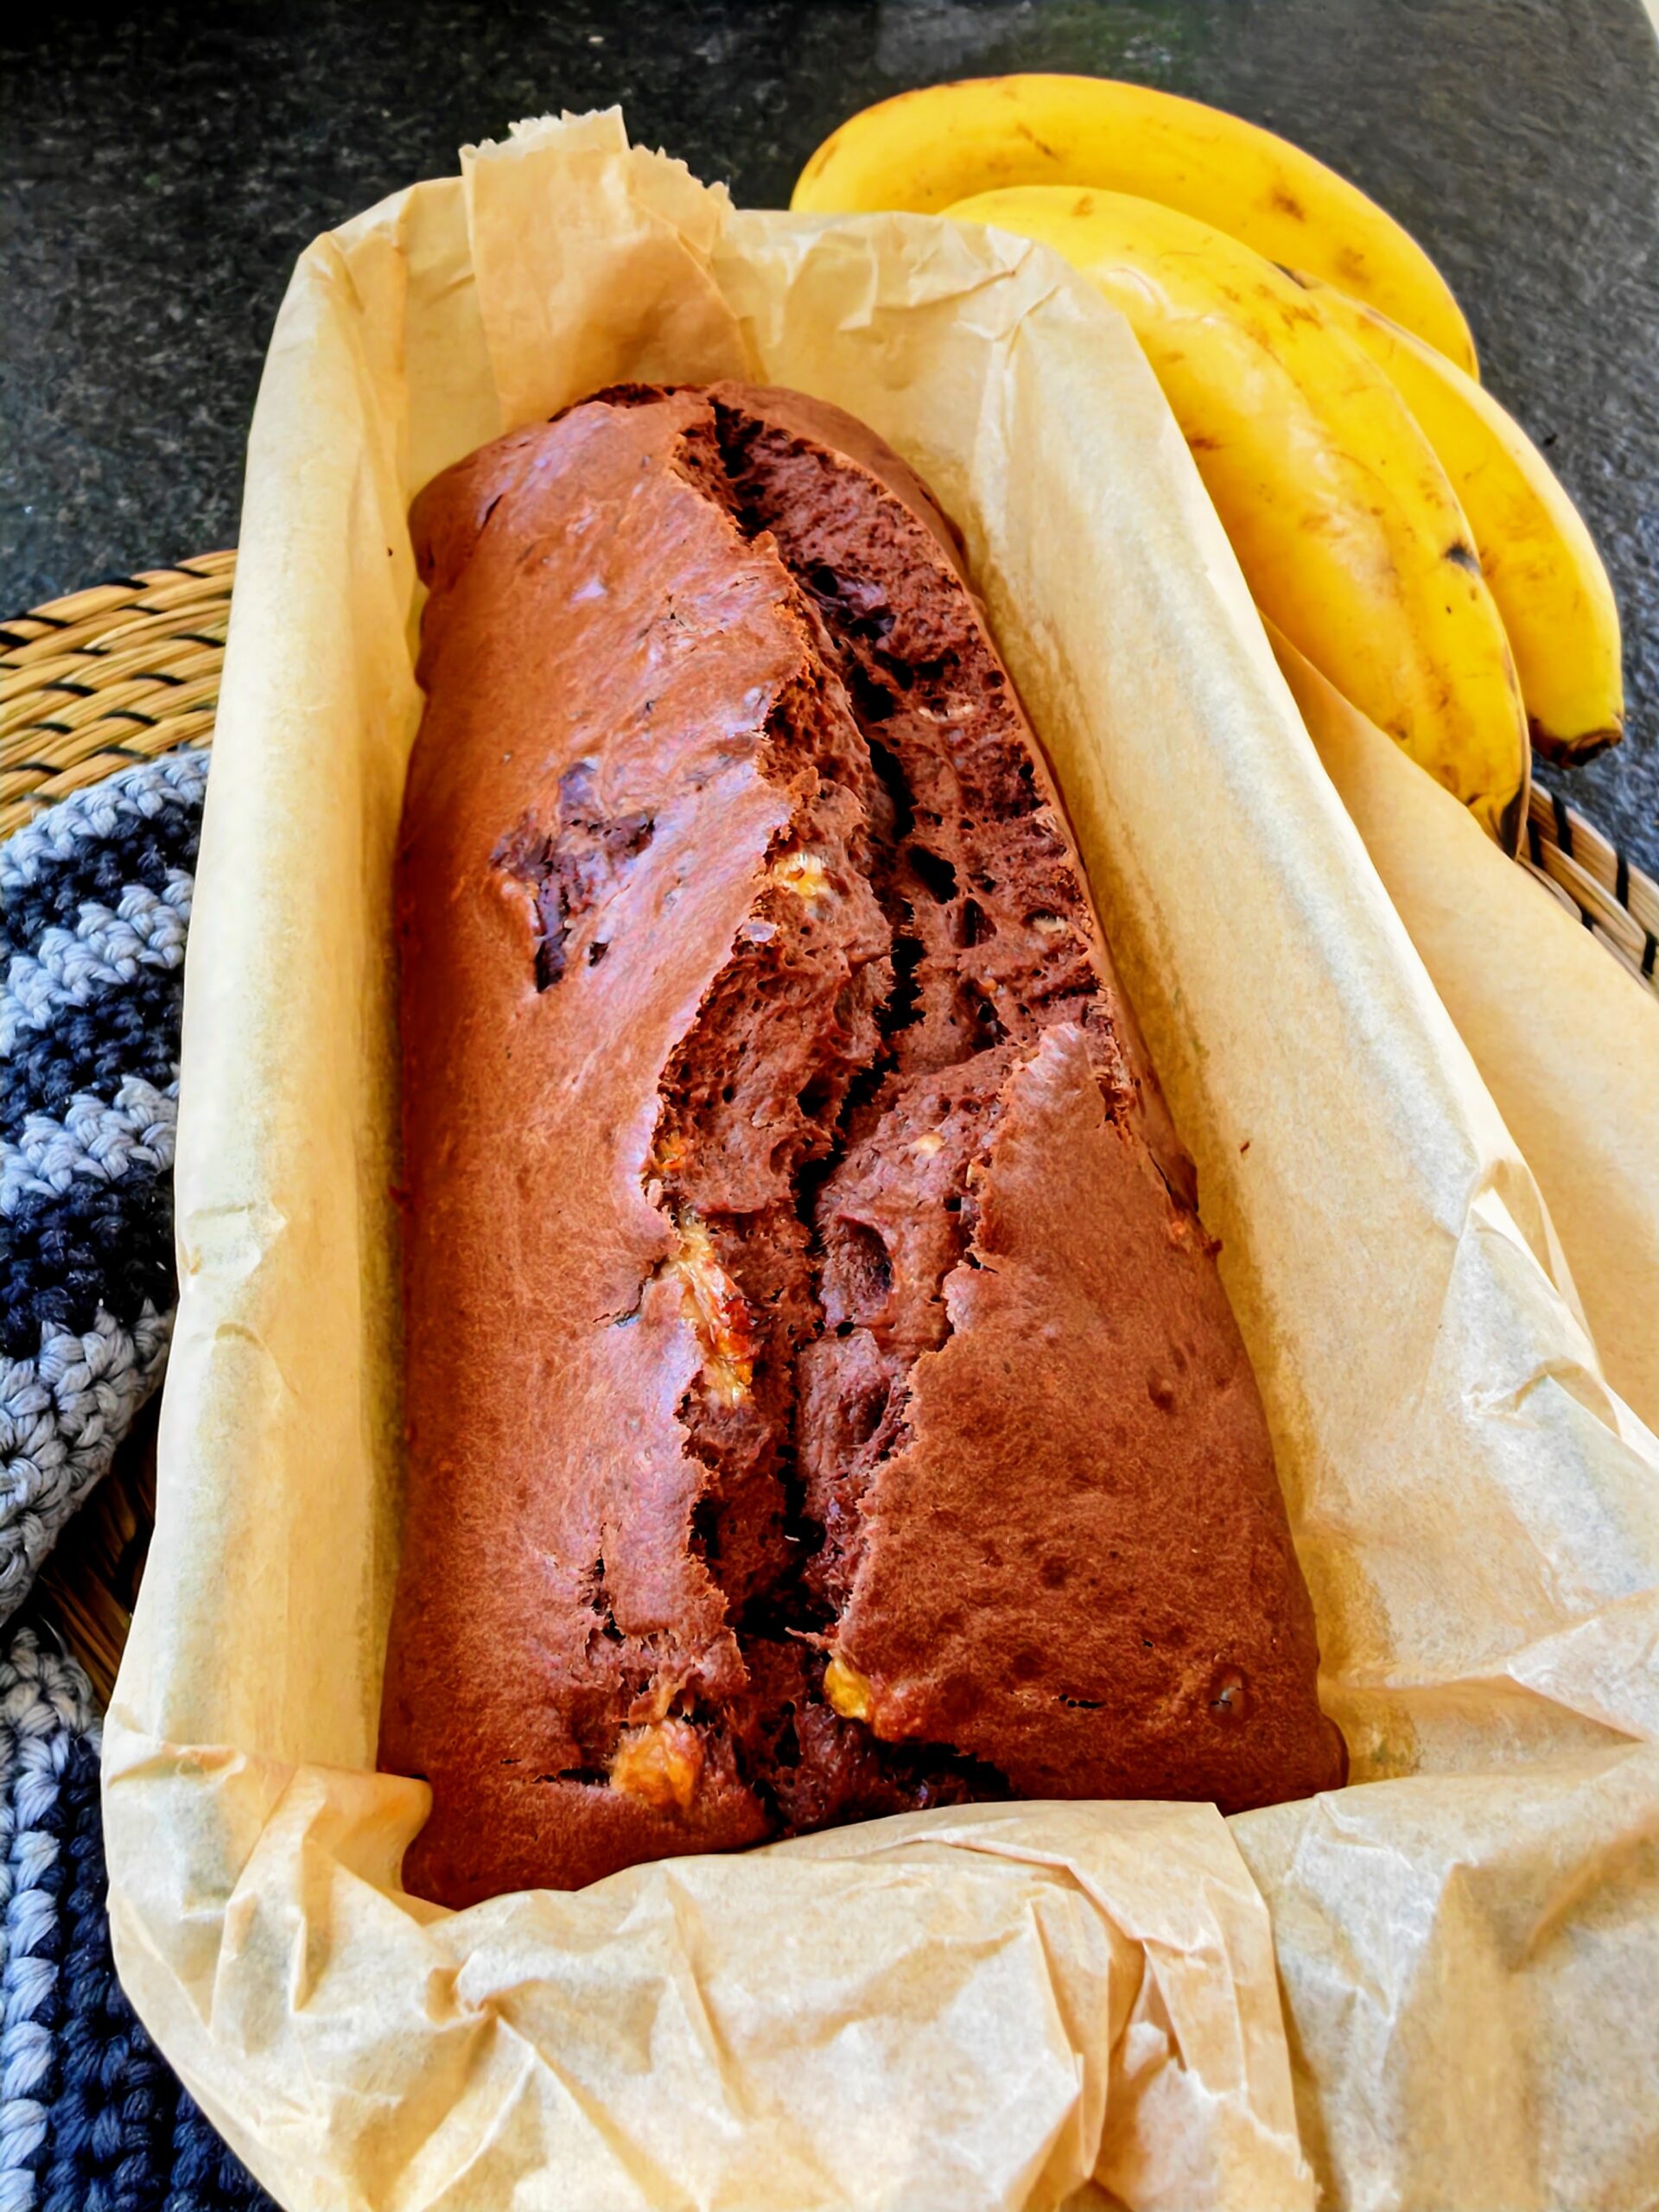 Leckerer Schokoladenkuchen mit Banane - ohne Ei backen. Hier findest du ein schnelles Backrezept für Bananenkuchen von Julie. #backenmitliebe #bananenkuchen #schokoladenkuchen #ohneei #veganerezepte